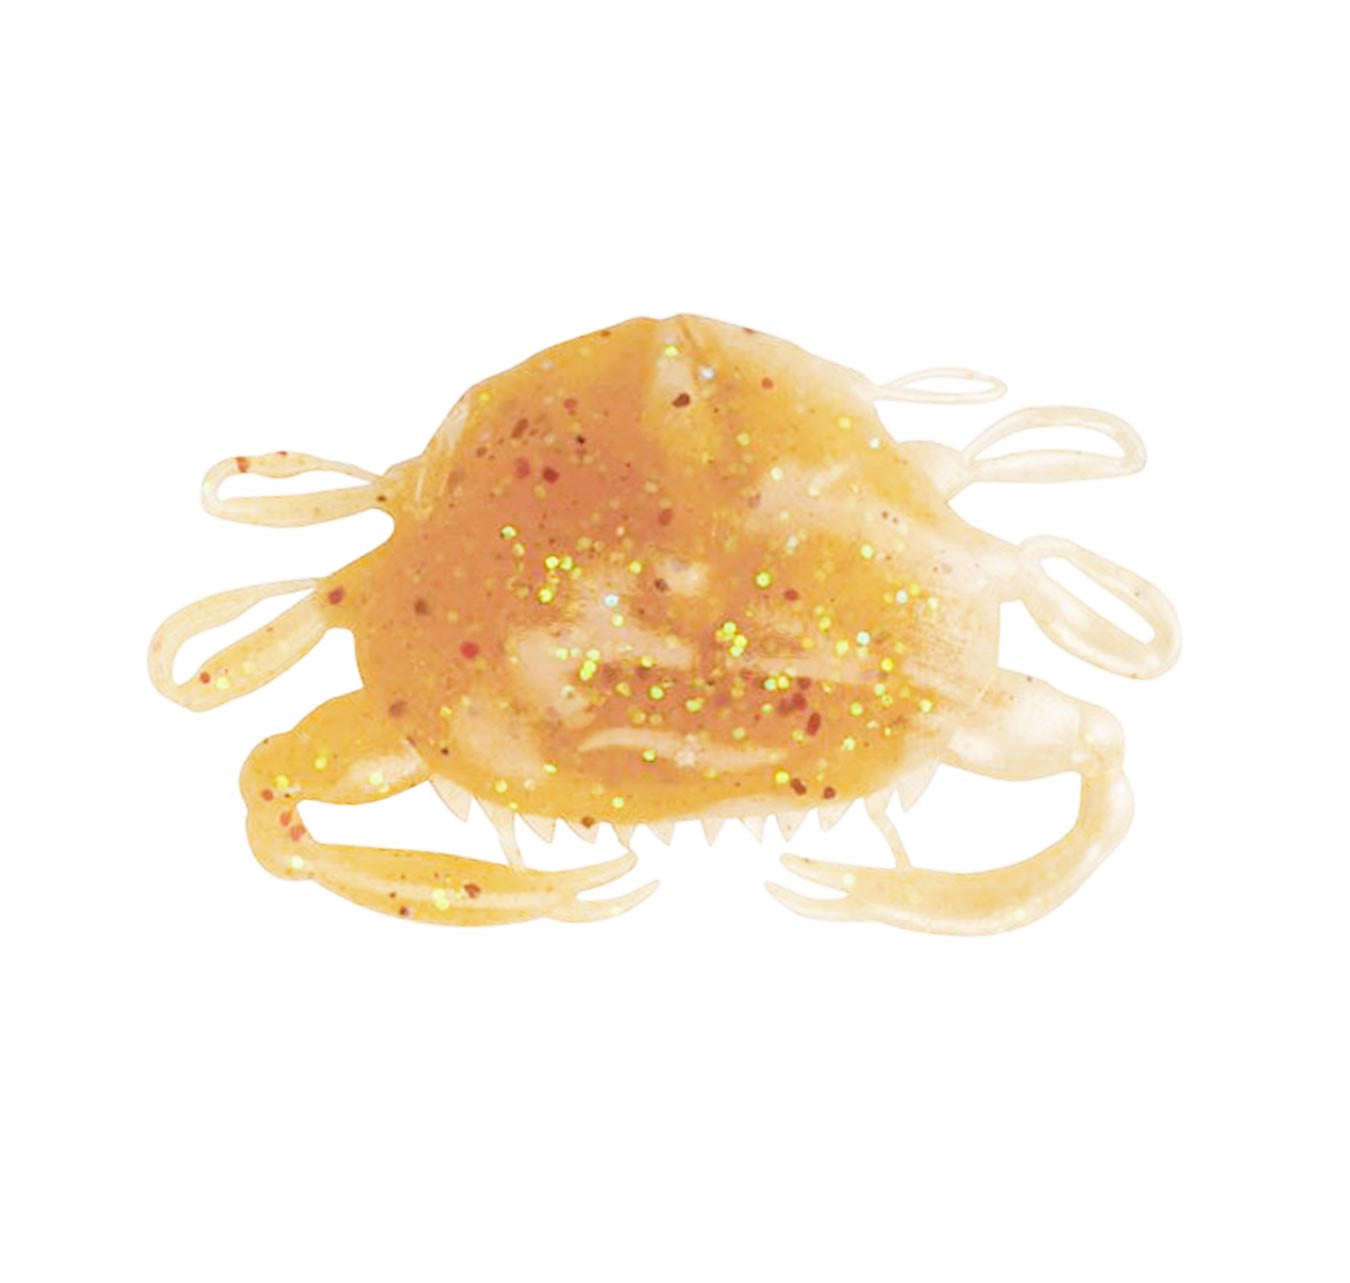 Berkley Gulp Peeler Crab